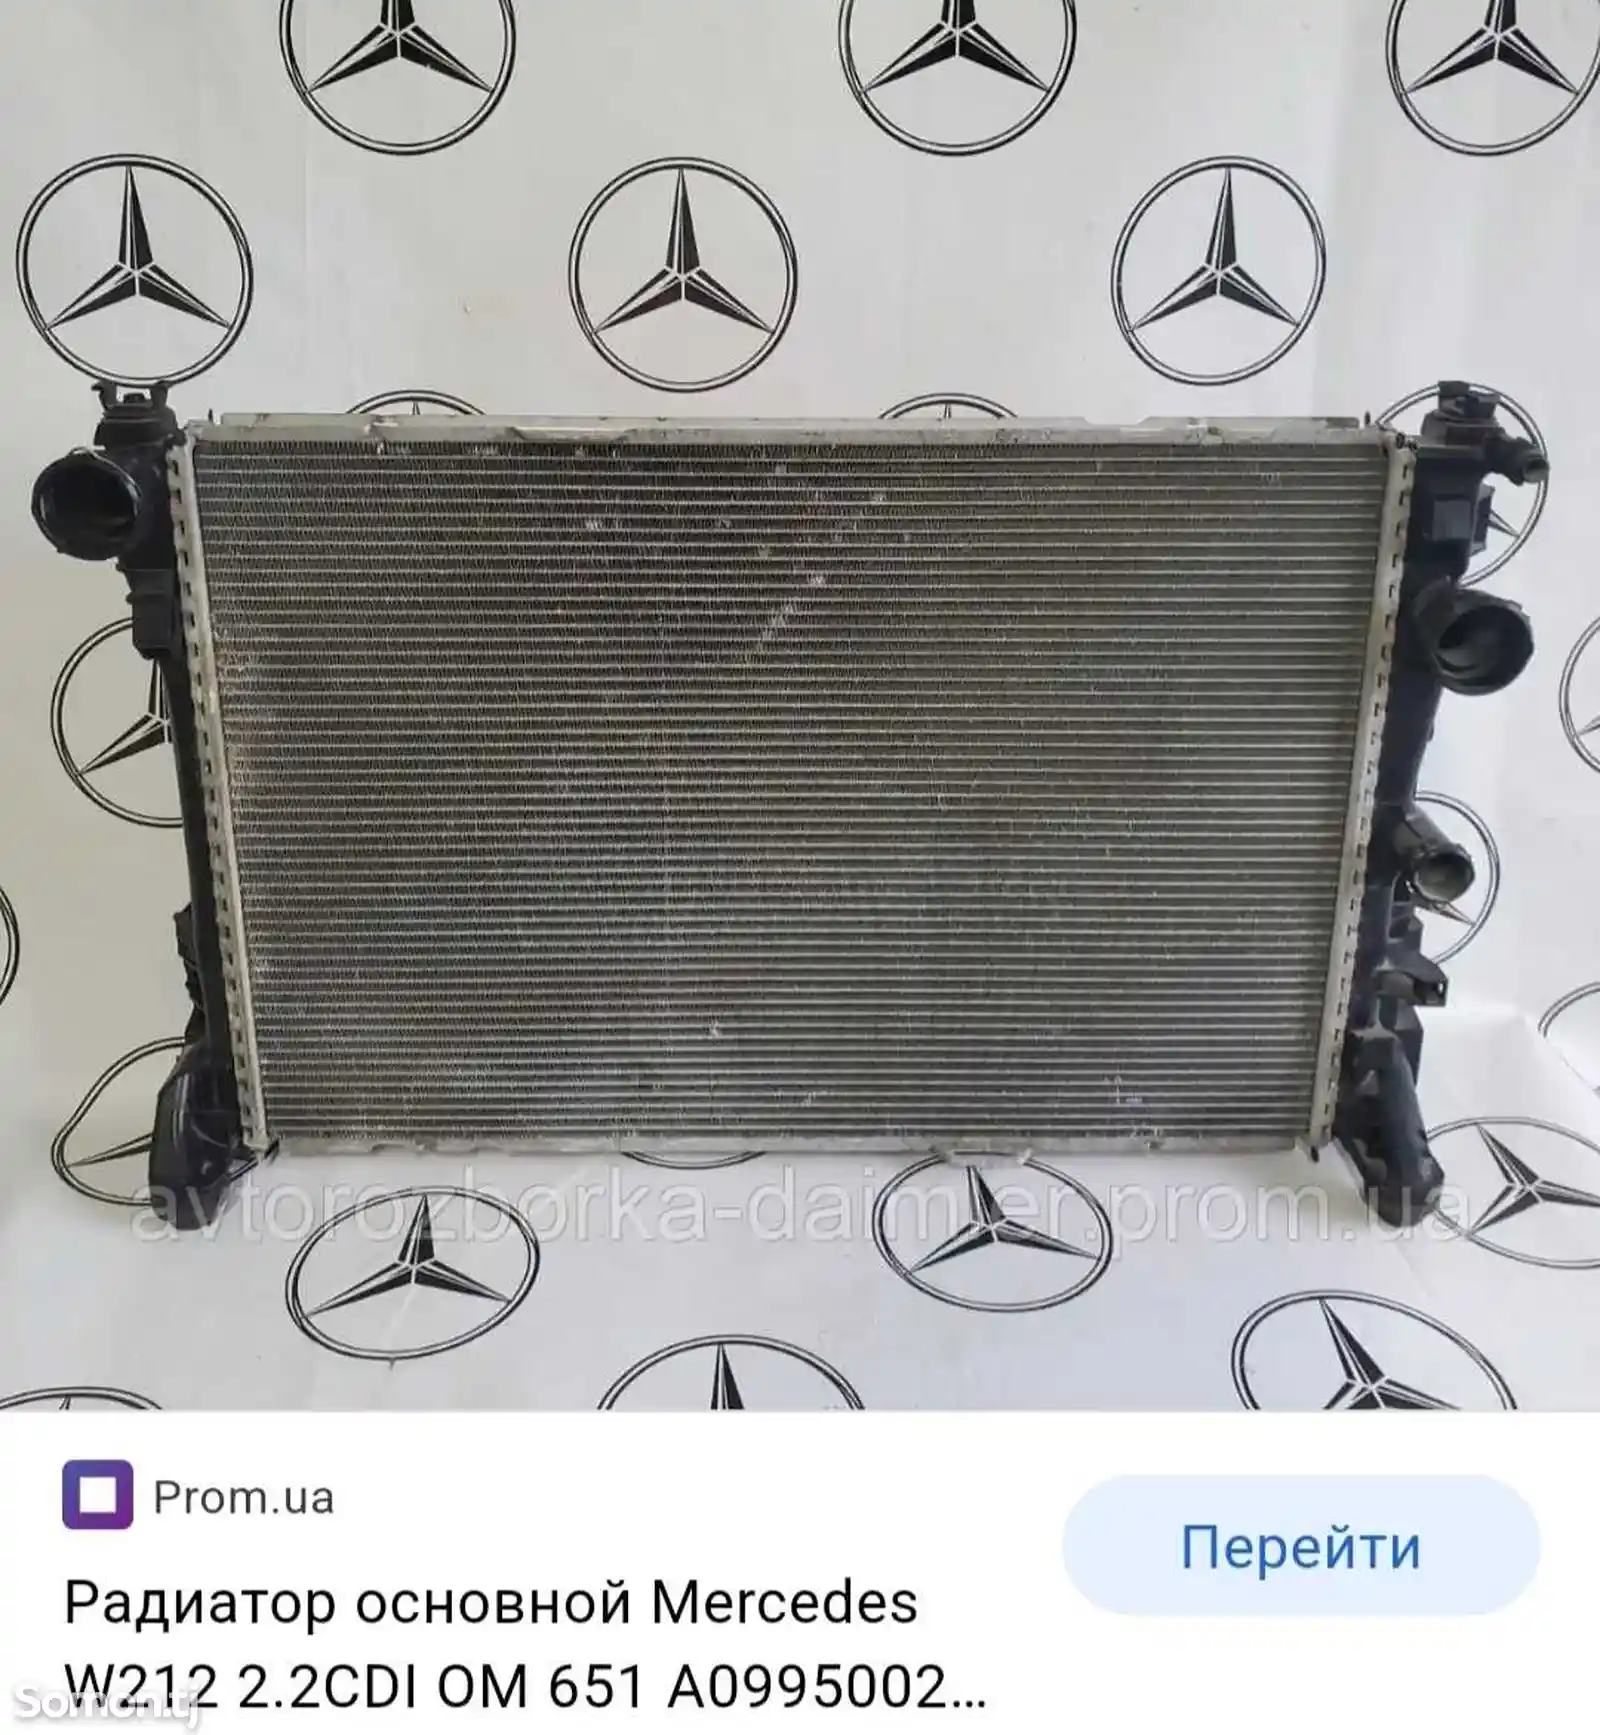 Радиатор водяной от Mercedes-Benz w212